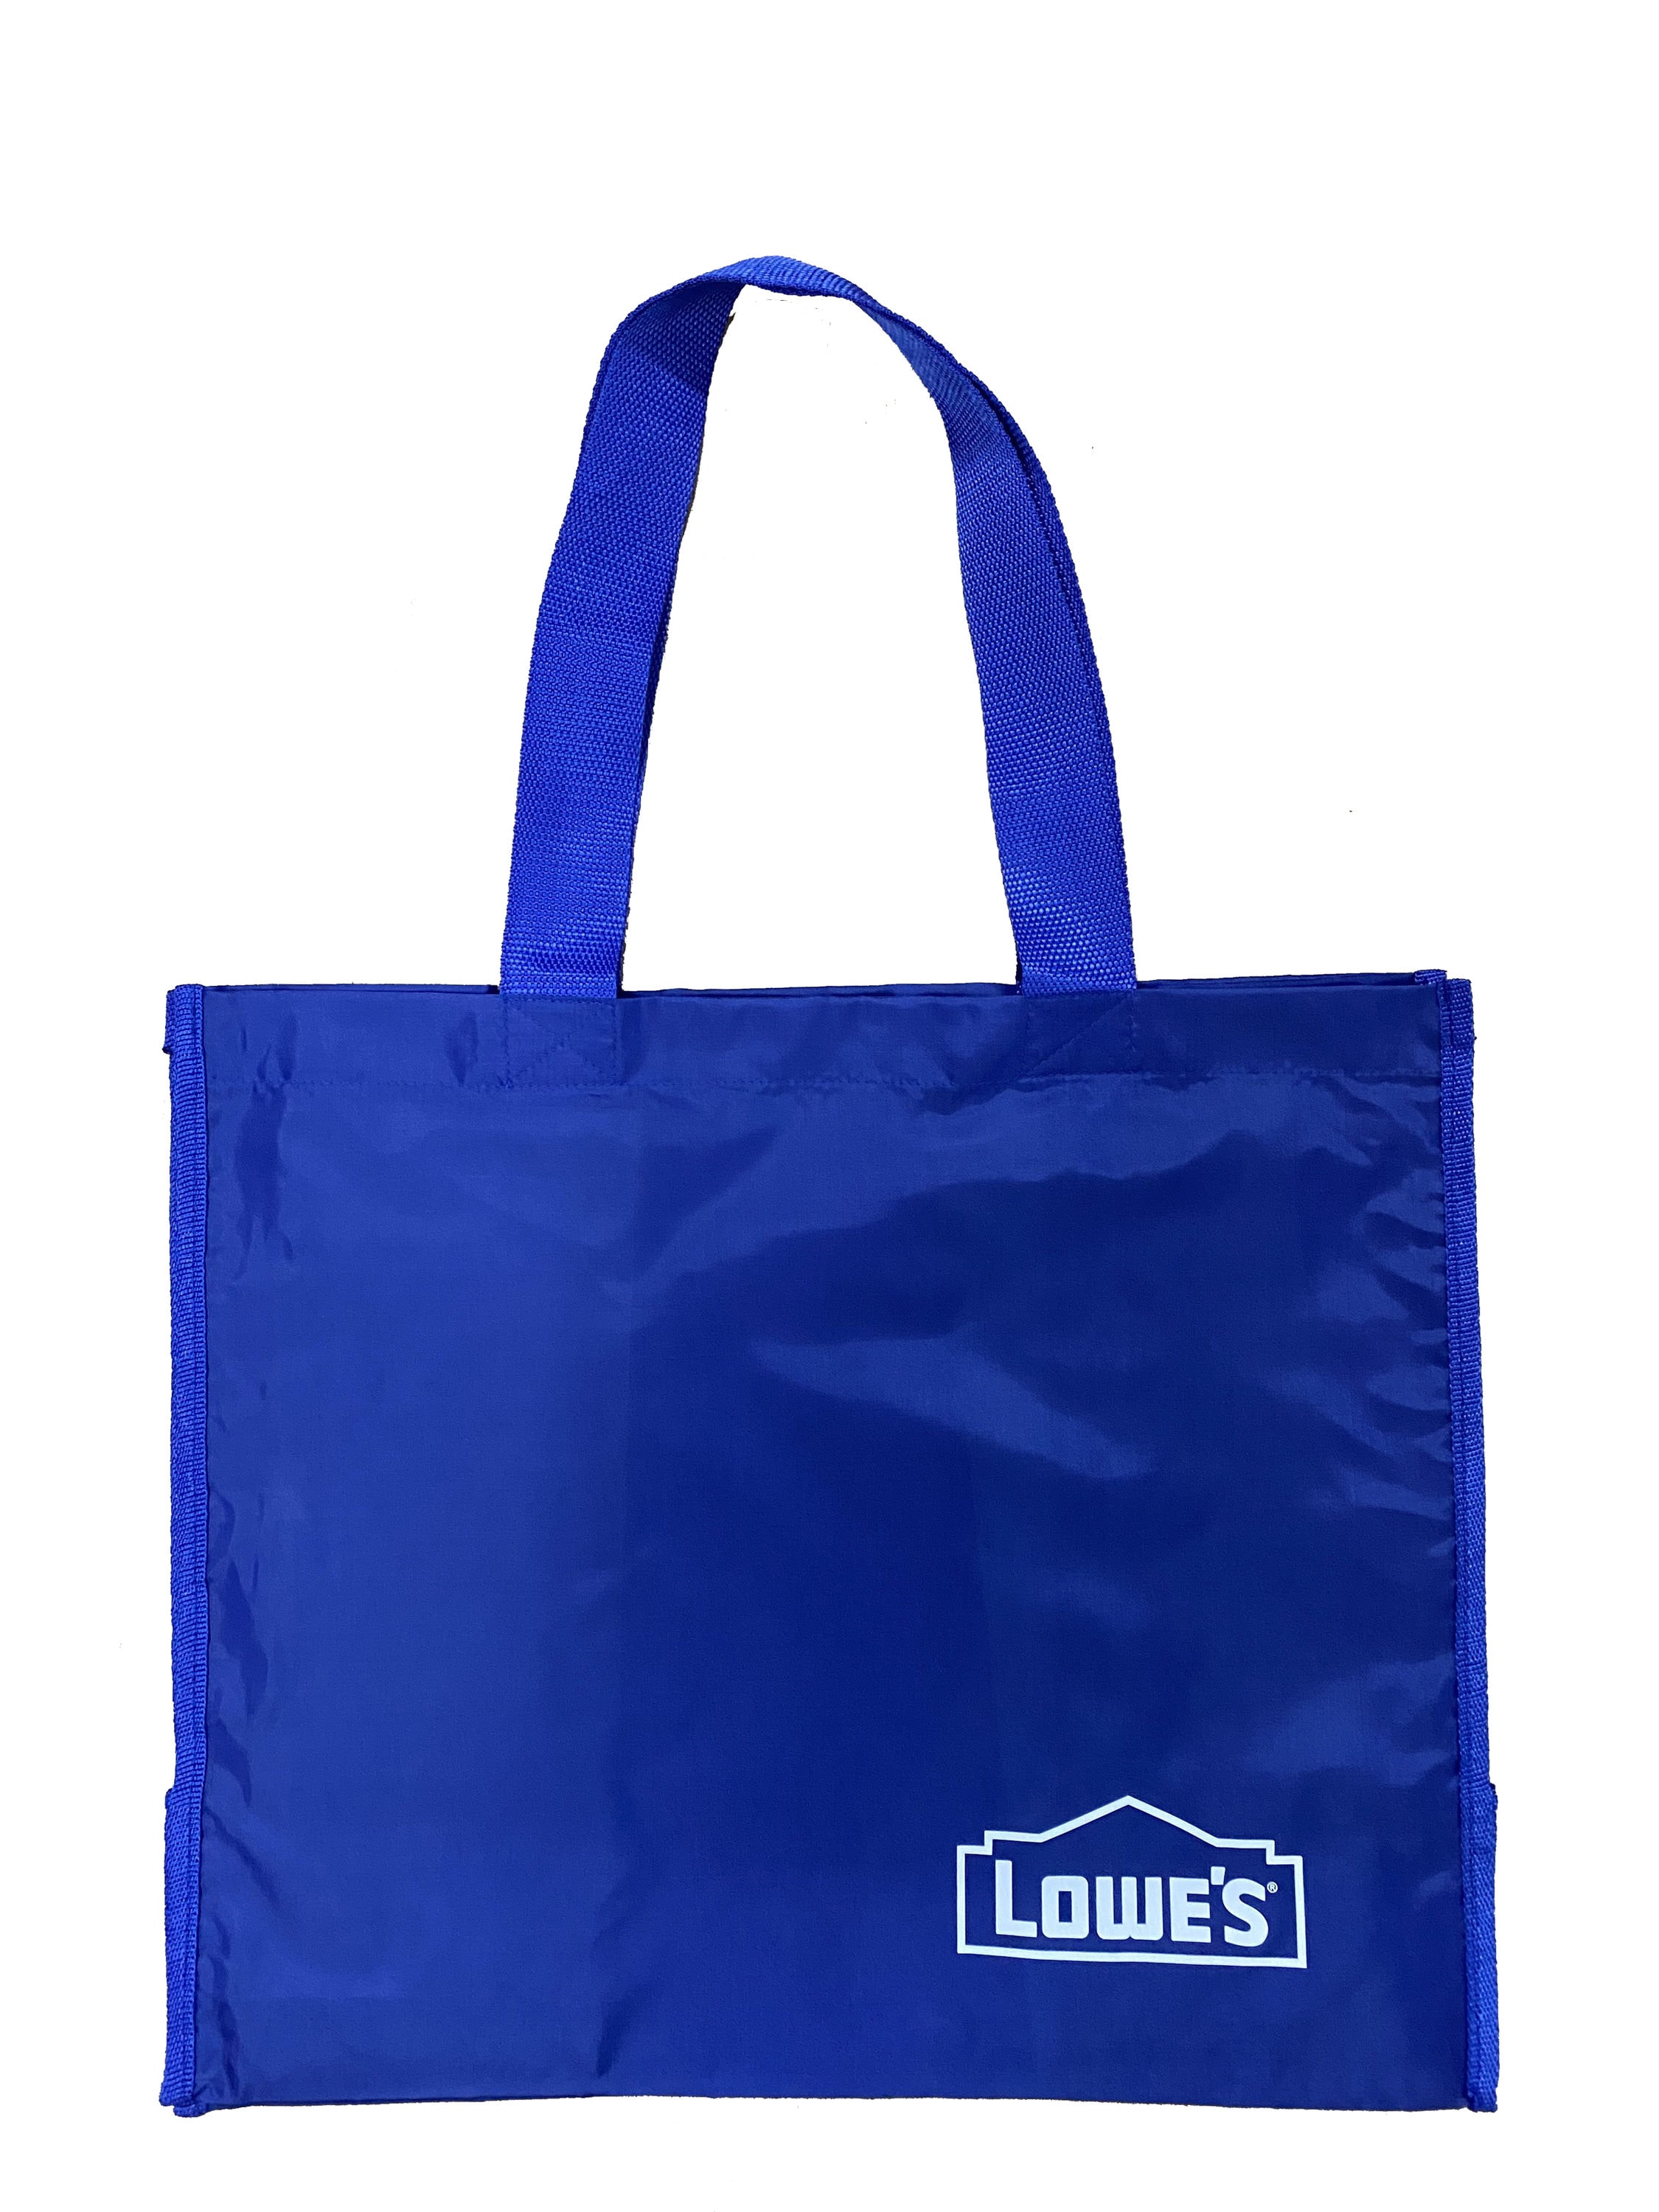 3 LARGE 2.5 Gallon Plastic STORAGE Vlear Bags Handle Bag 15x15